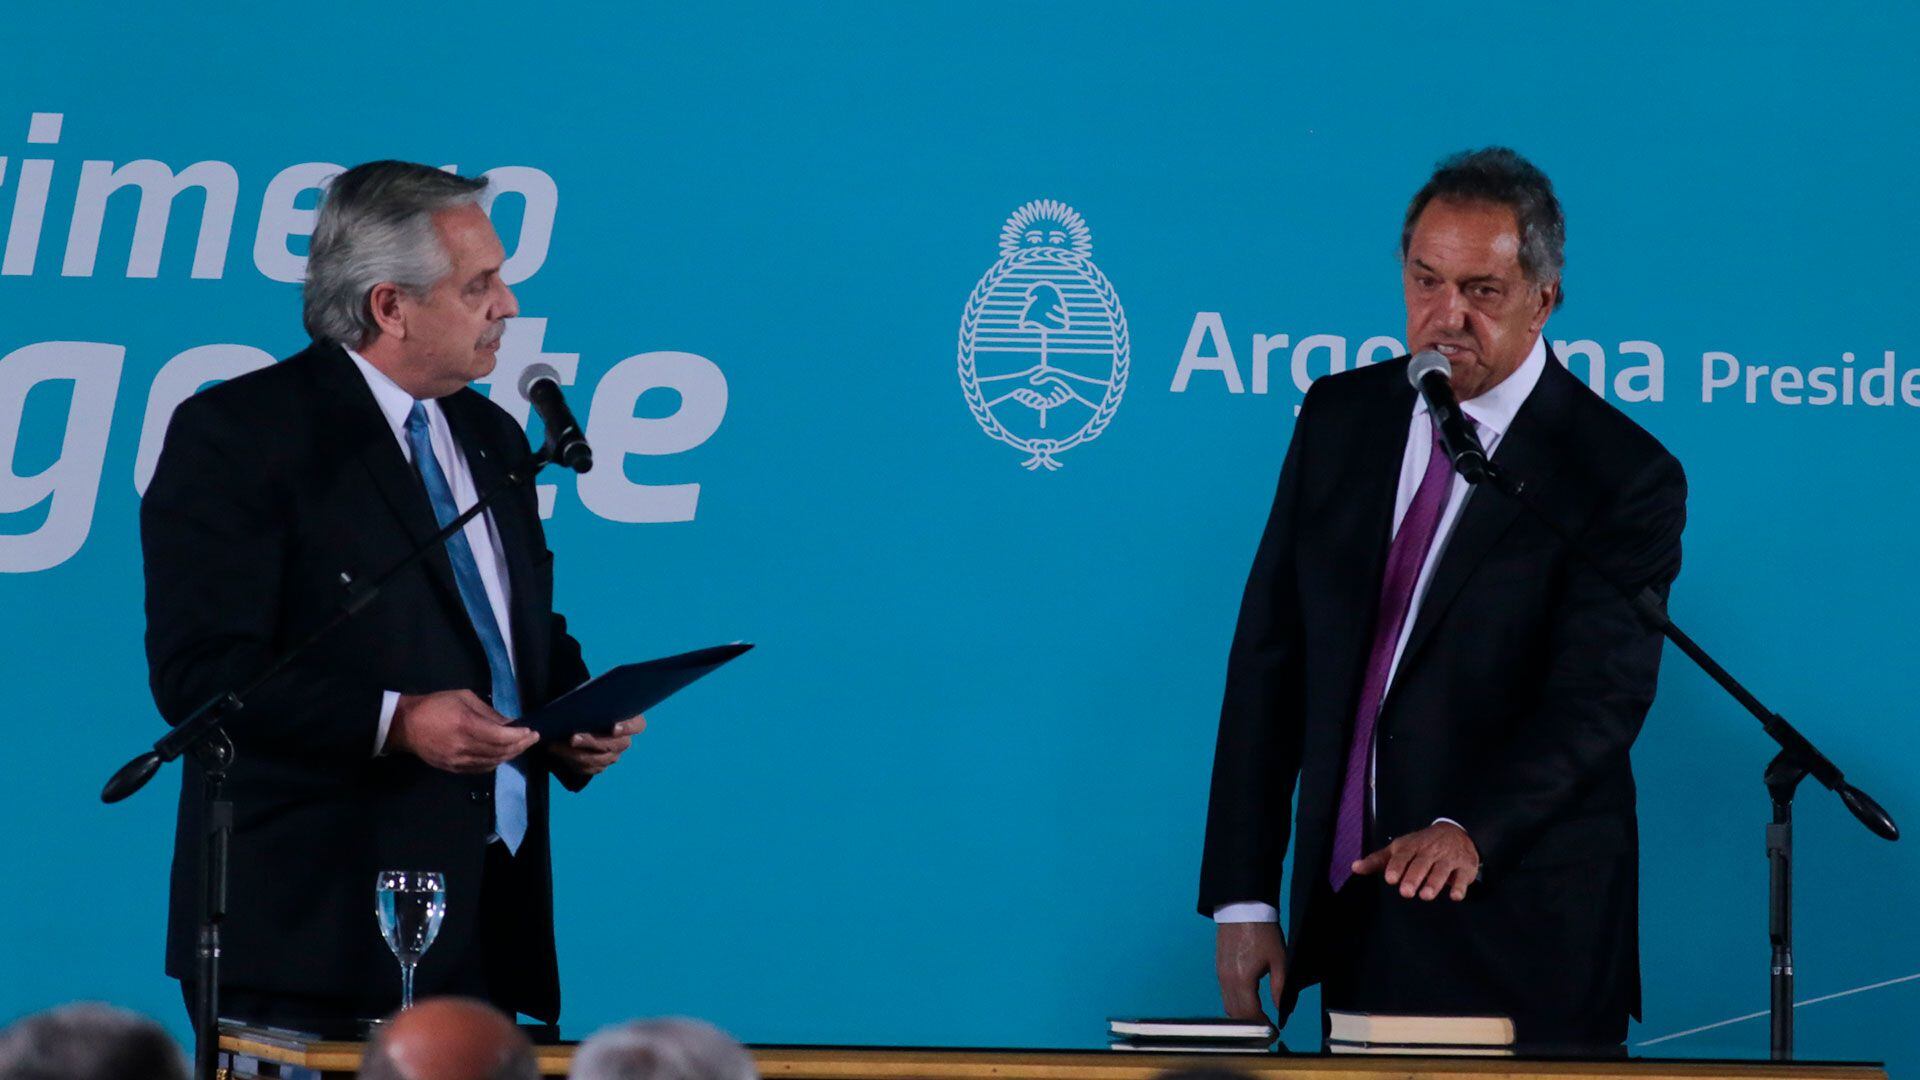 El Presidente le tomó juramento al nuevo Ministro (Luciano González)